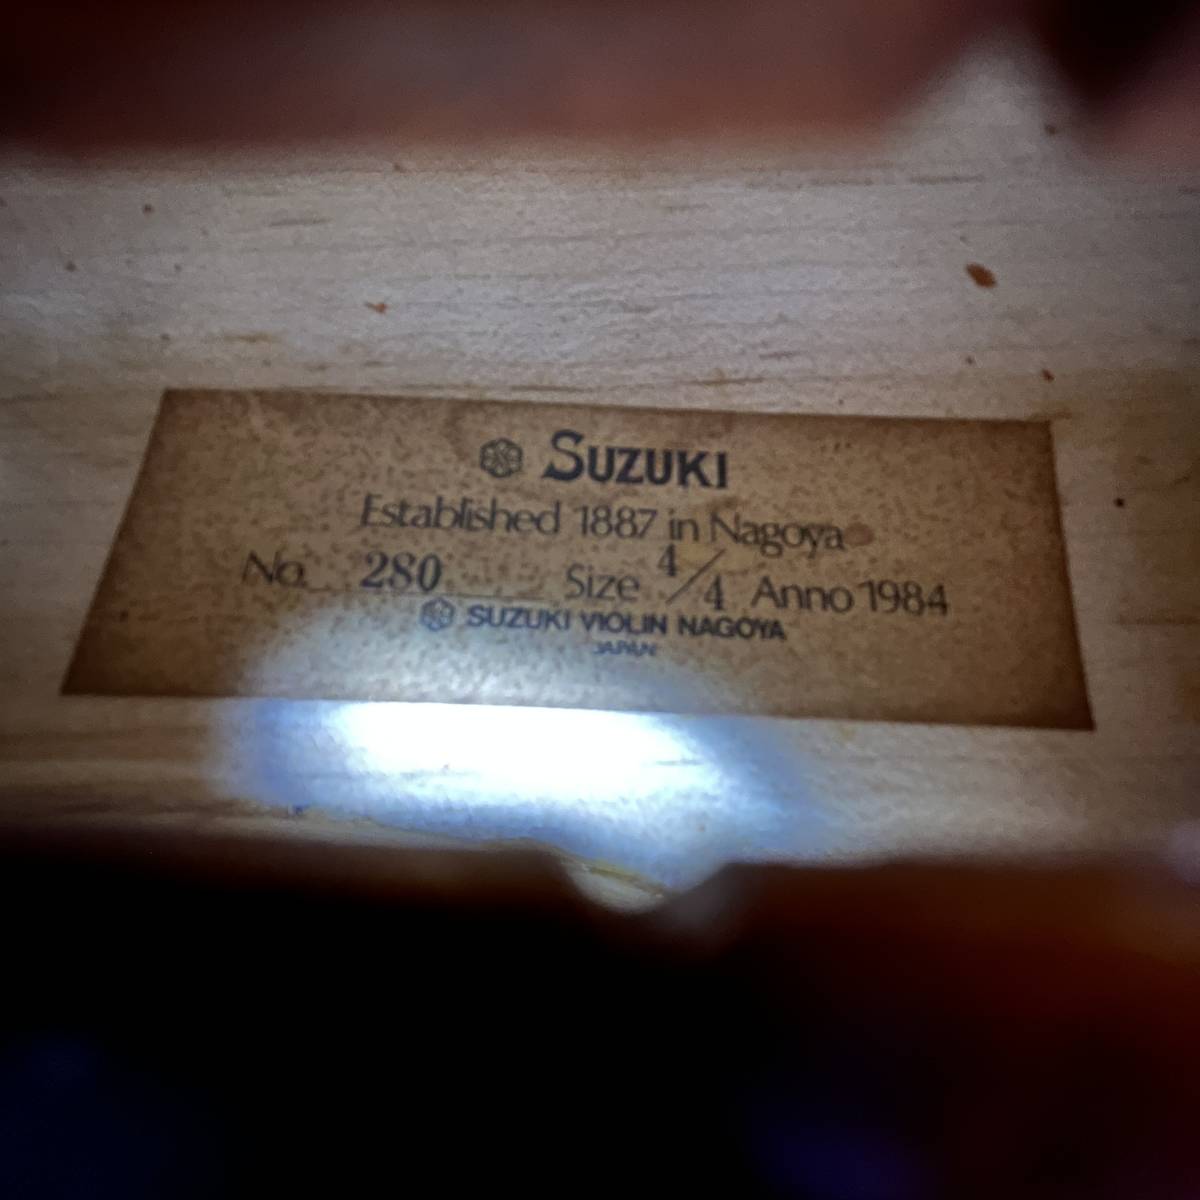 SUZUKI No.280 Anno1984 4/4 バイオリン ハードケース付き 弓 松脂付属/120サイズ_画像3